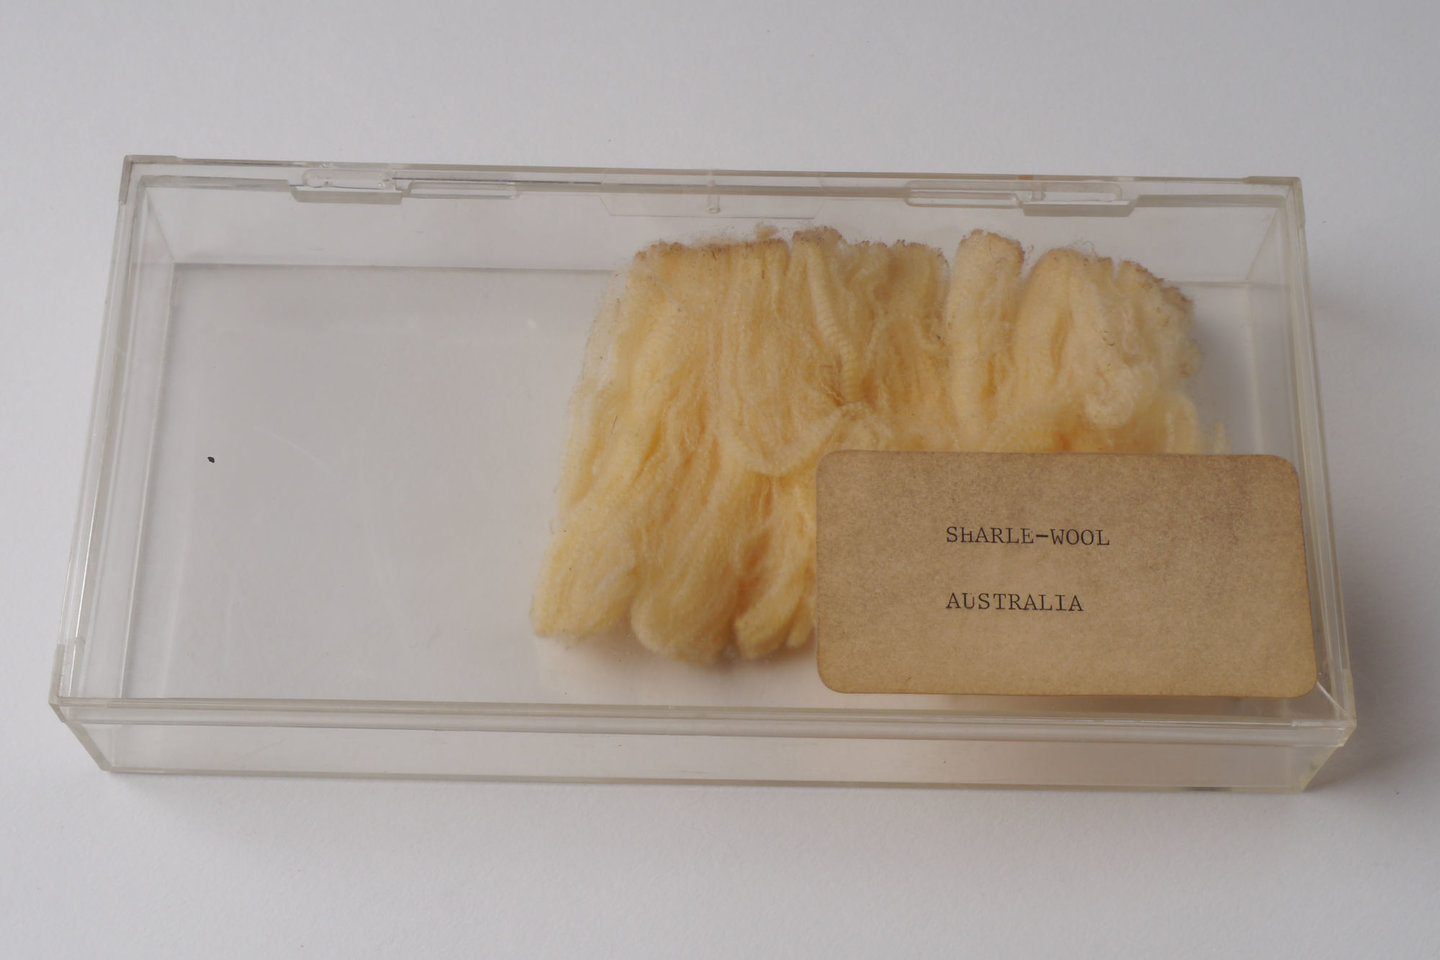 Staal van wol uit Australie